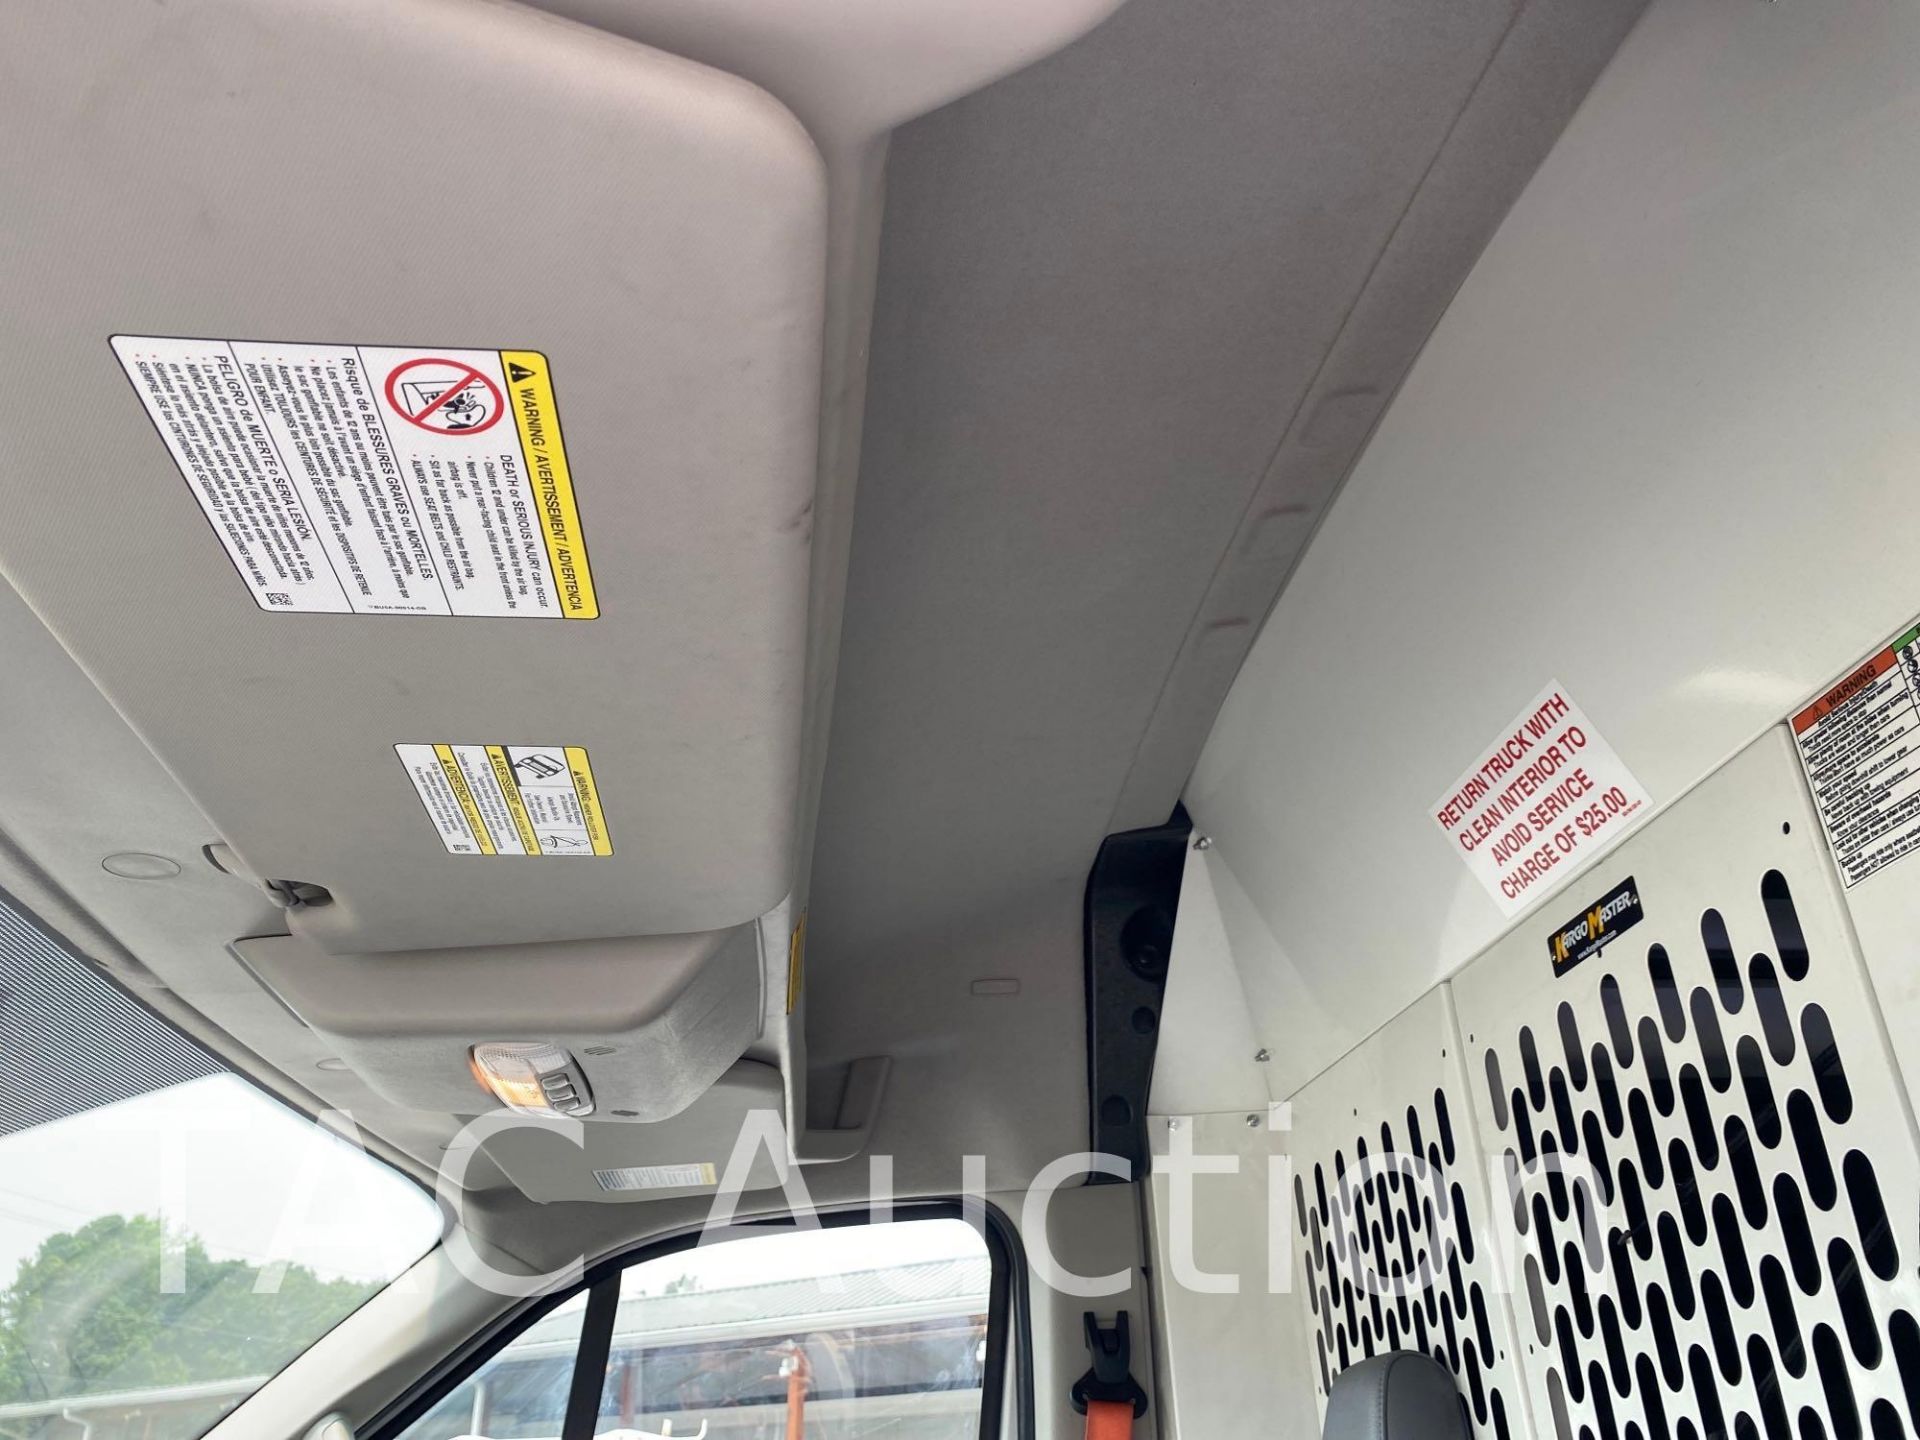 2018 Ford Transit 150 Cargo Van - Image 10 of 46